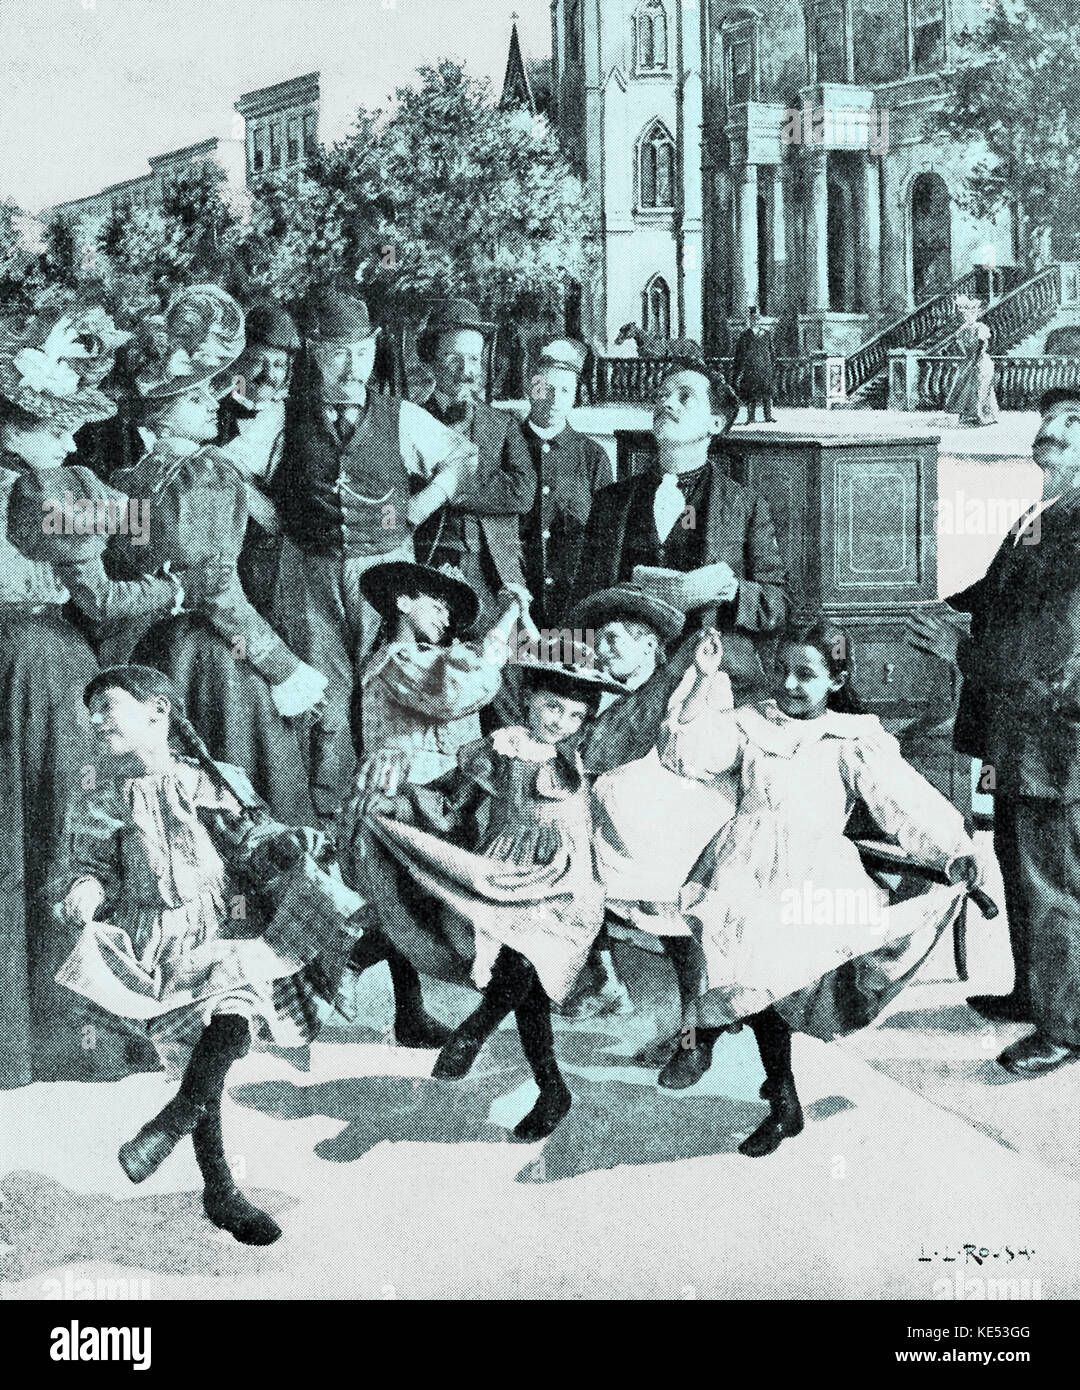 Les jeunes filles dansant sur la musique de l'orgue de barbarie sur les trottoirs de New York, 1890. Illustration de l'Amérique du dix-neuvième siècle. Banque D'Images